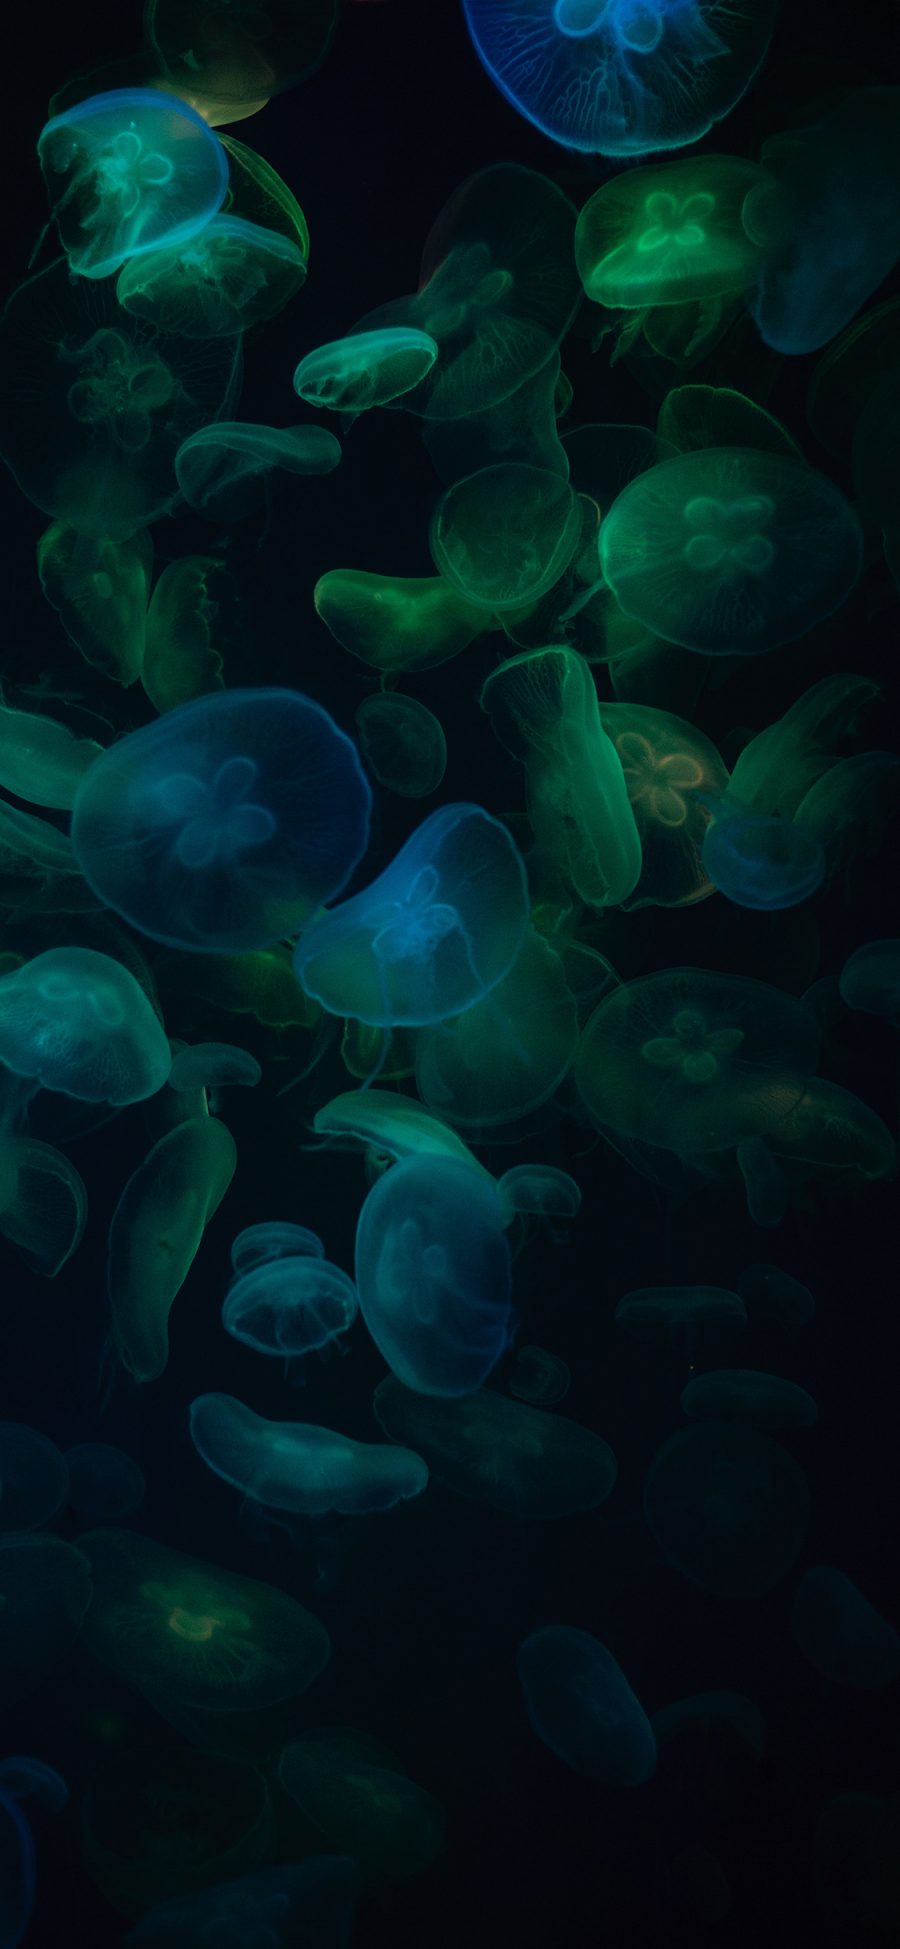 [2436×1125]水母 透明 密集 浮游 苹果手机壁纸图片